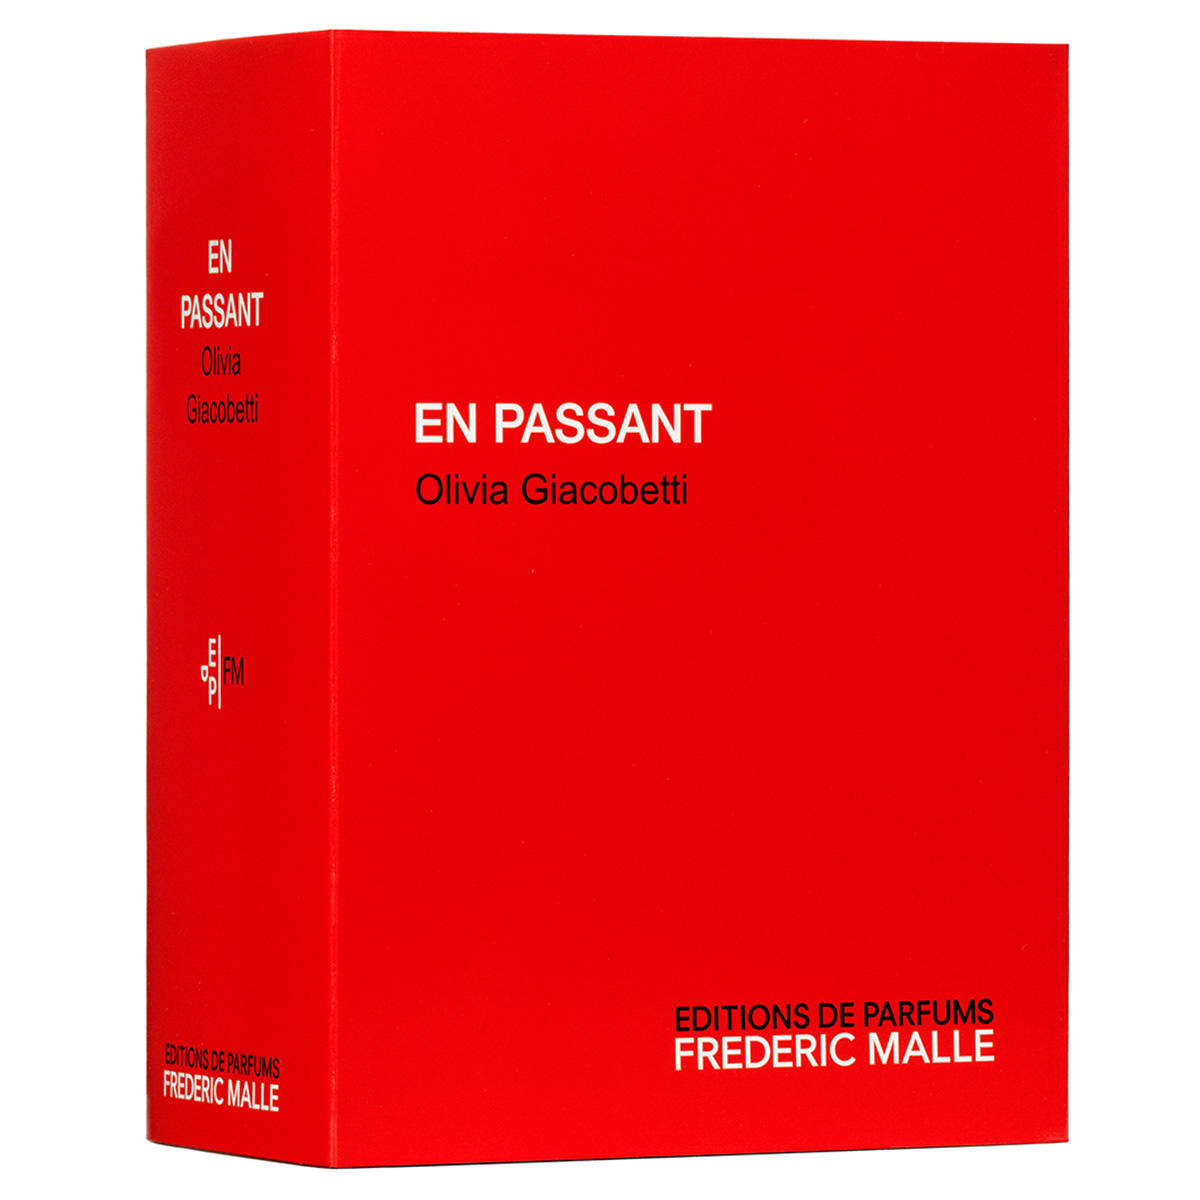 EDITIONS DE PARFUMS FREDERIC MALLE EN PASSANT EAU DE PARFUM 100 ml - 2